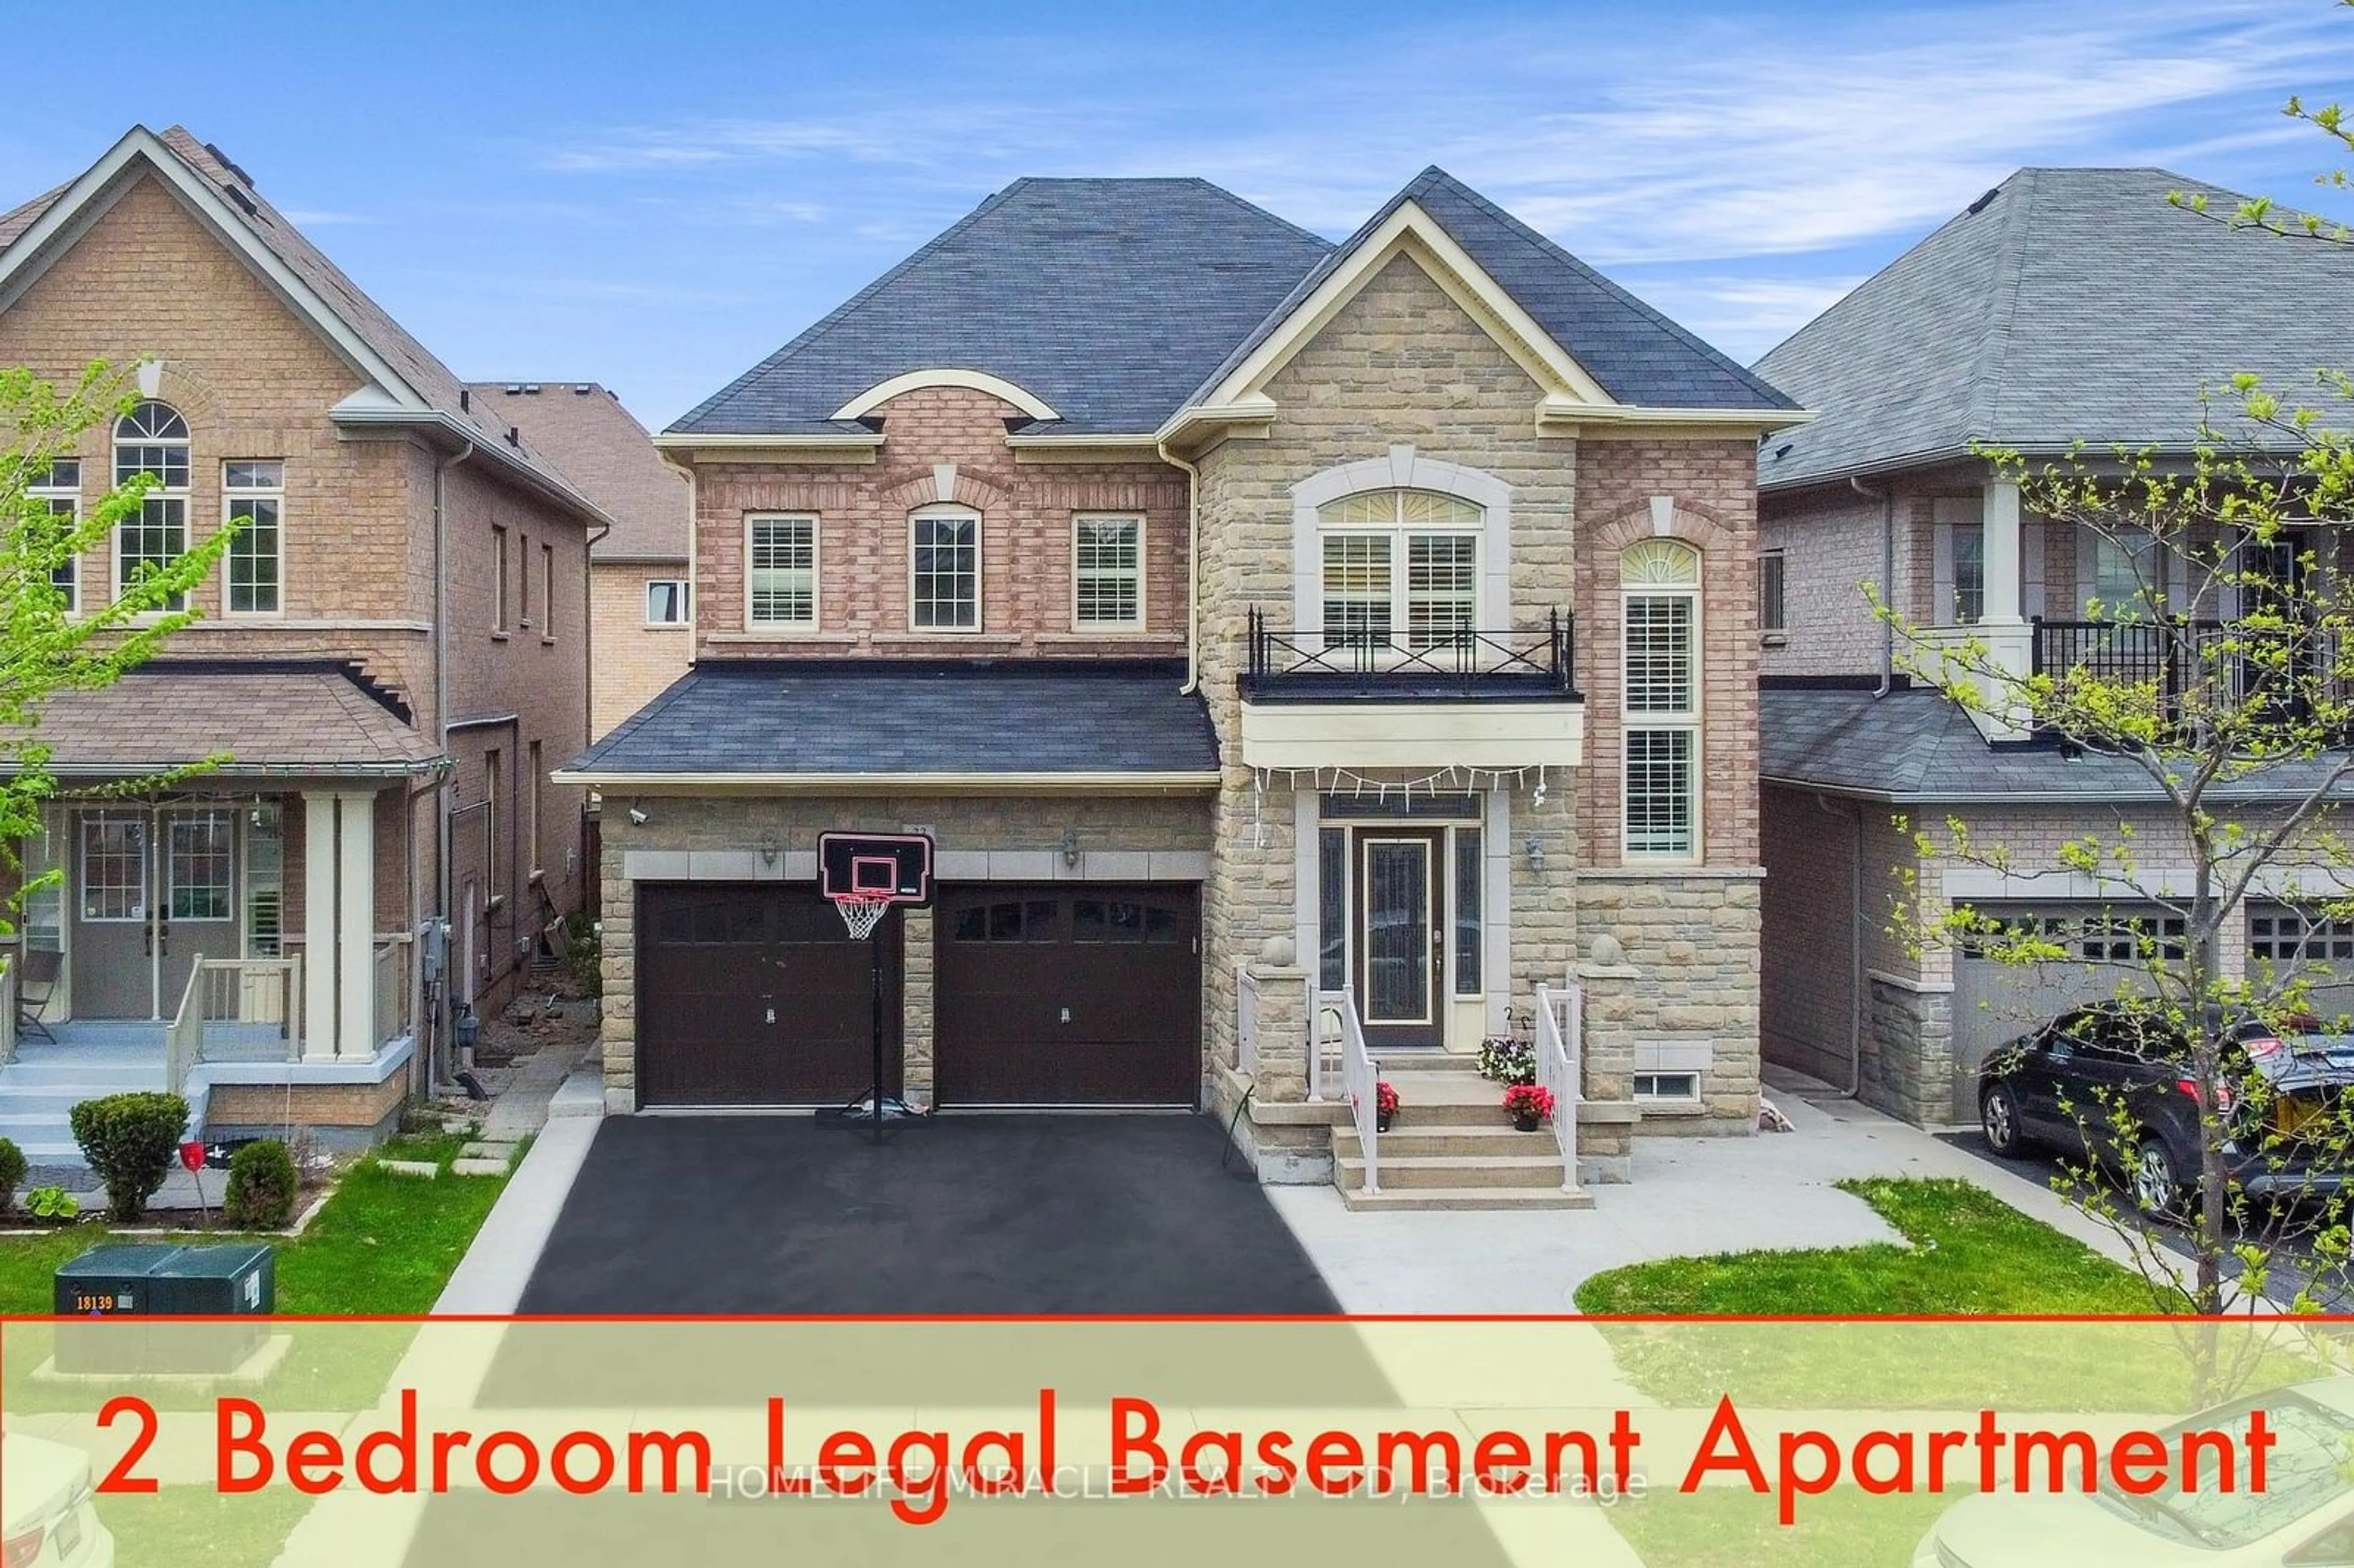 Home with brick exterior material for 33 Orangeblossom Tr, Brampton Ontario L6X 3B5